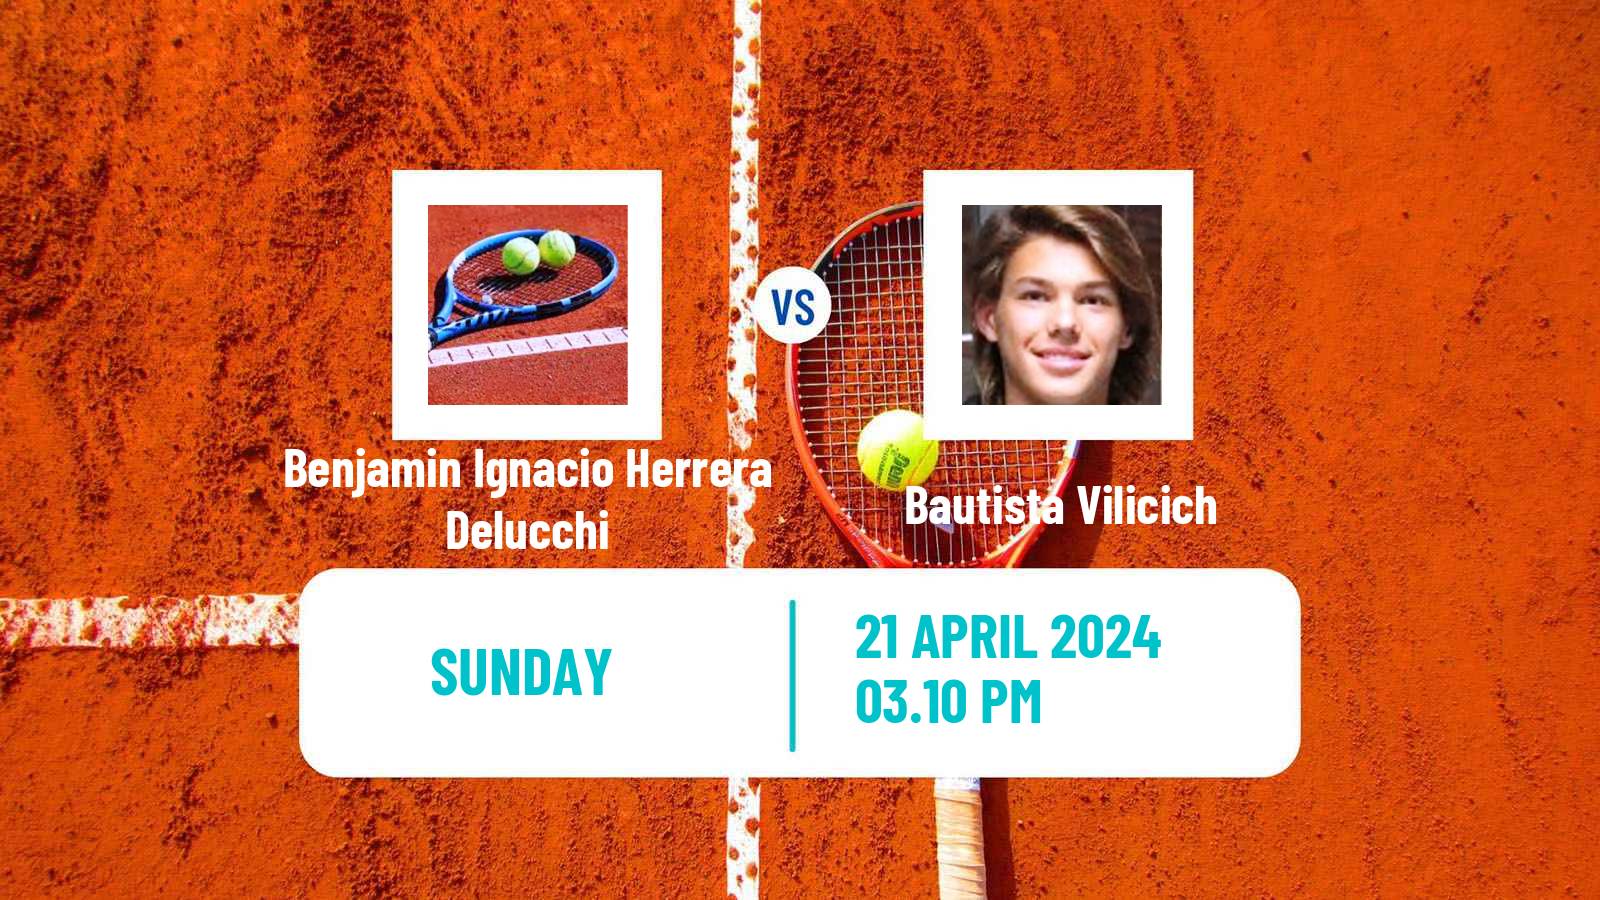 Tennis Concepcion Challenger Men Benjamin Ignacio Herrera Delucchi - Bautista Vilicich